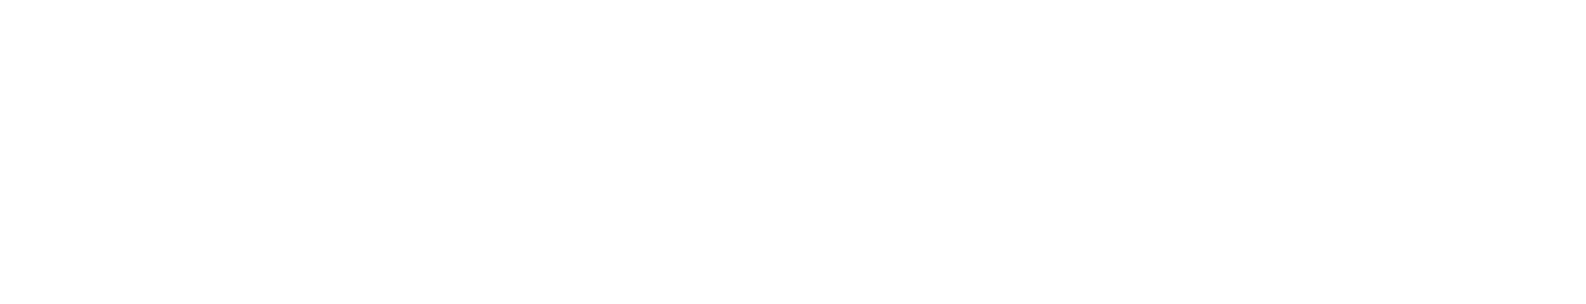 U.S. Cellular
 logo large for dark backgrounds (transparent PNG)